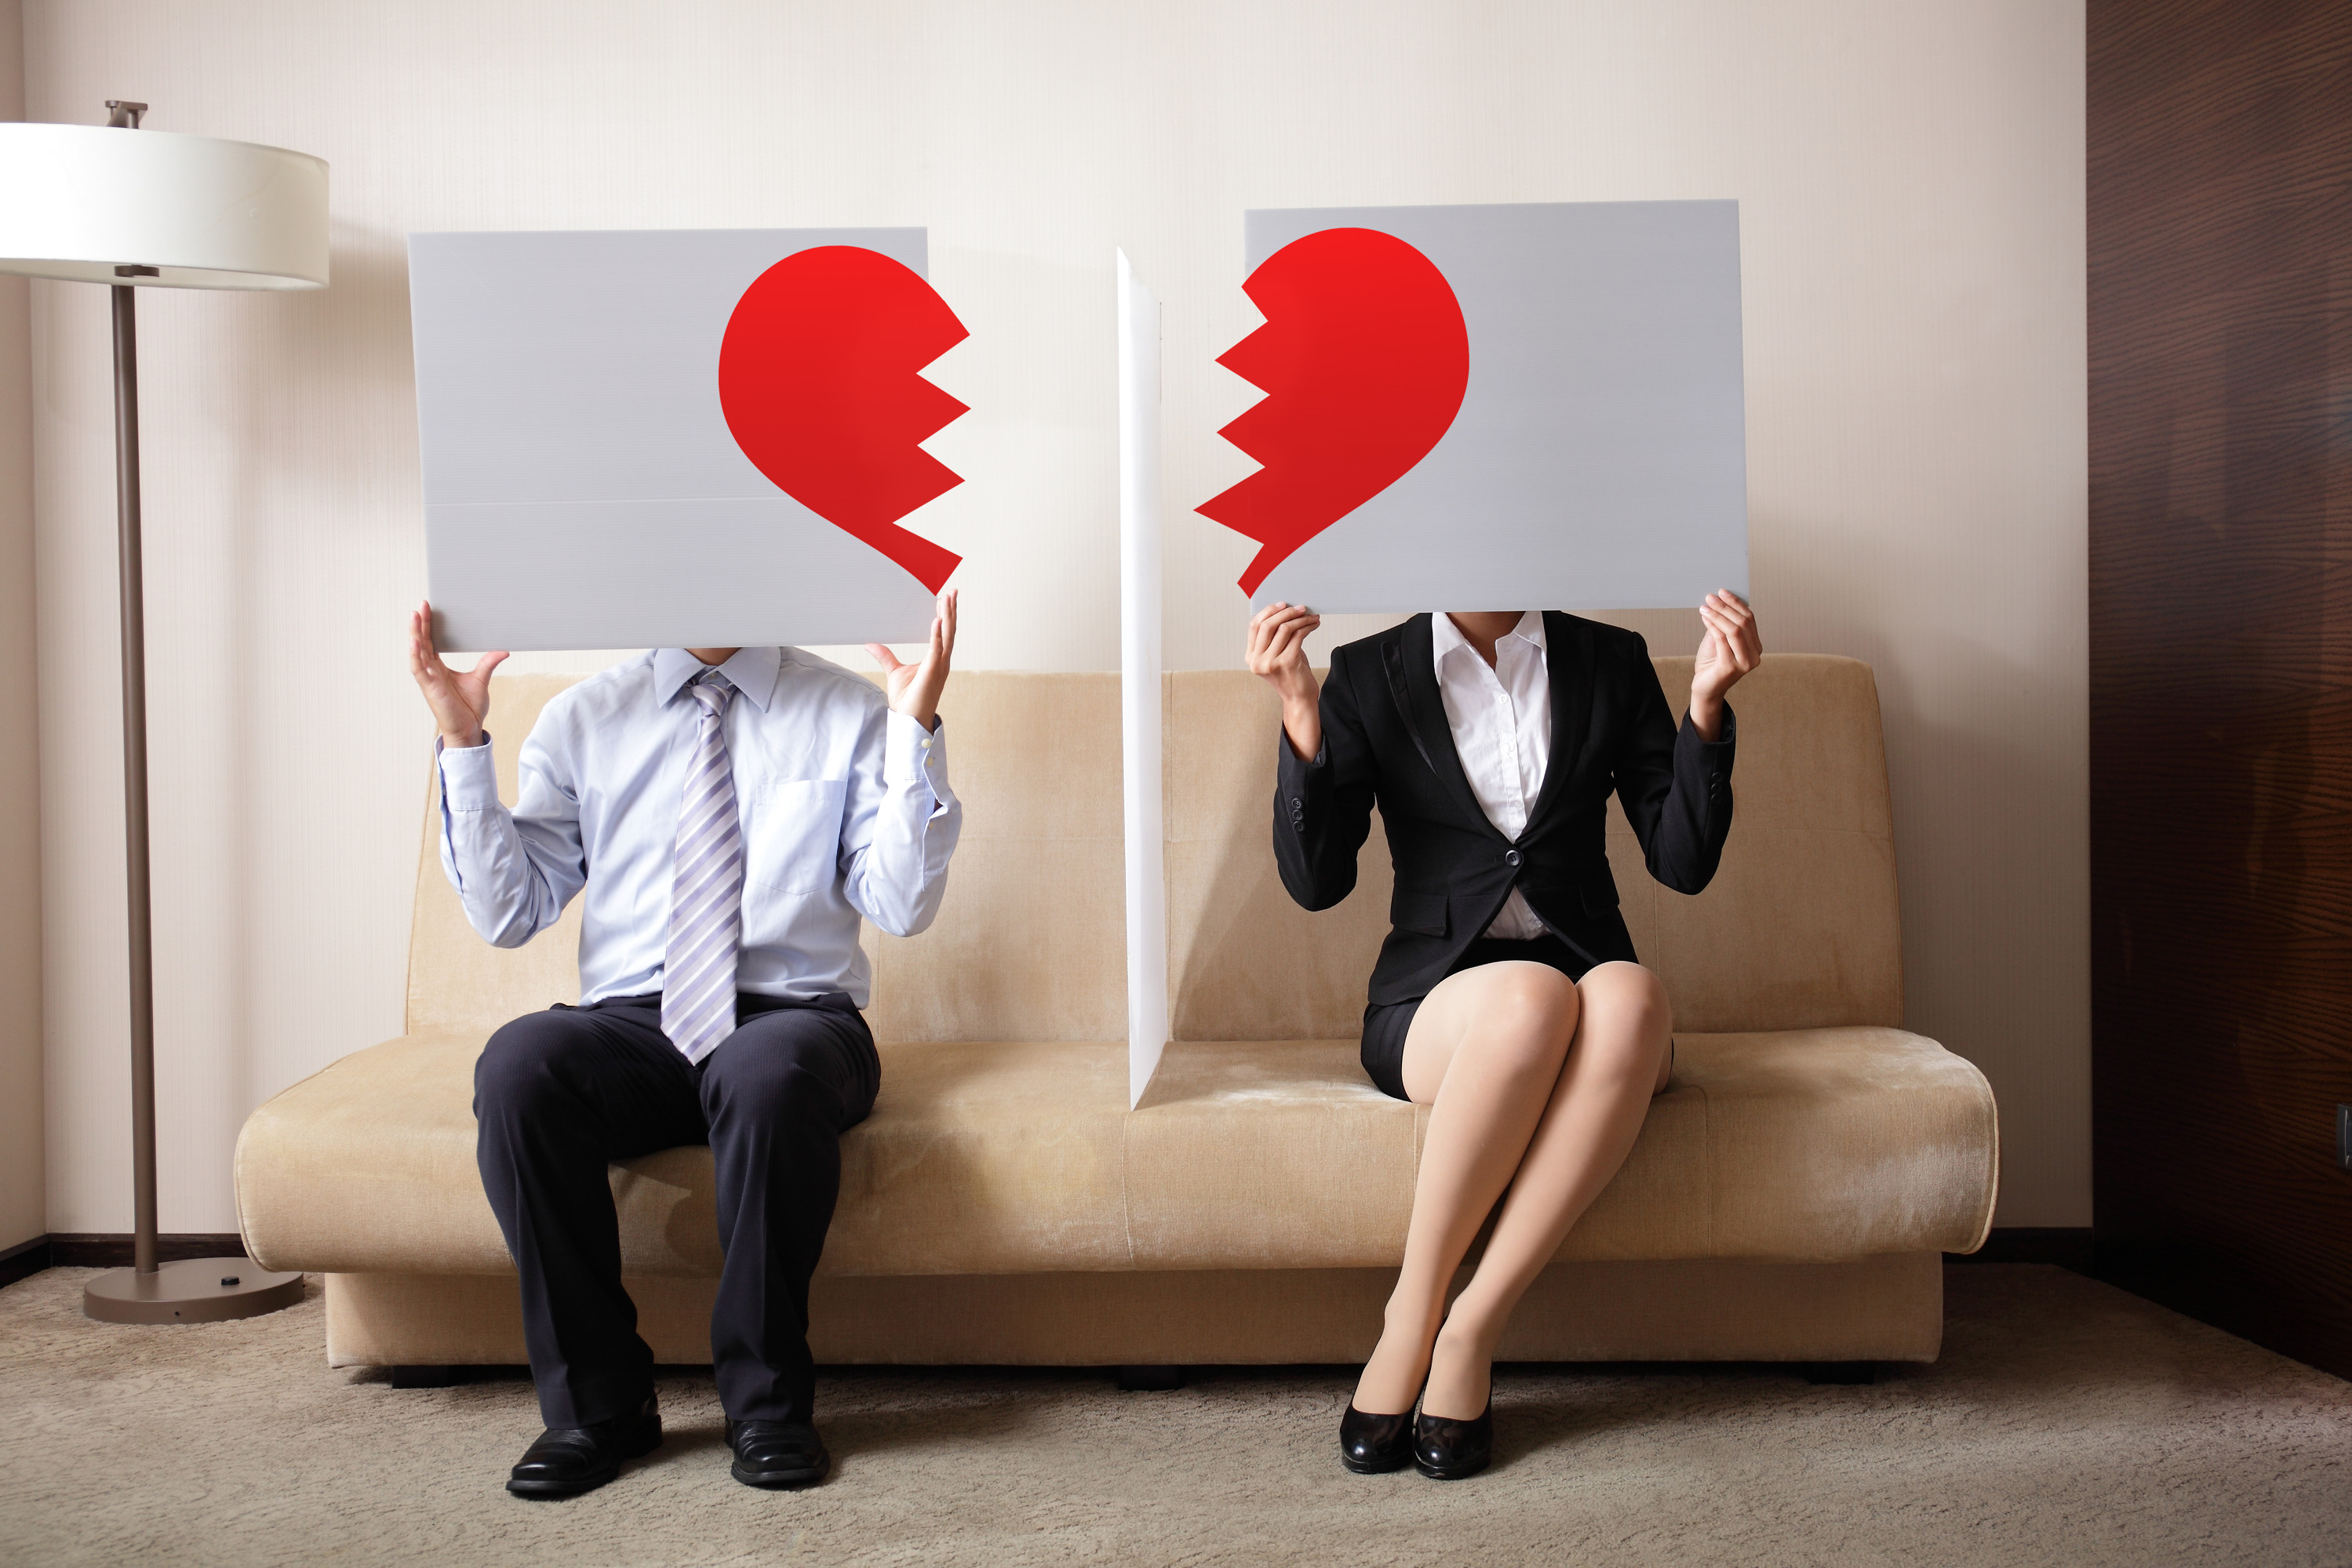 Брачные эксперты объясняют, почему женщины инициируют разводы чаще, чем мужчины. Неприятная правда.